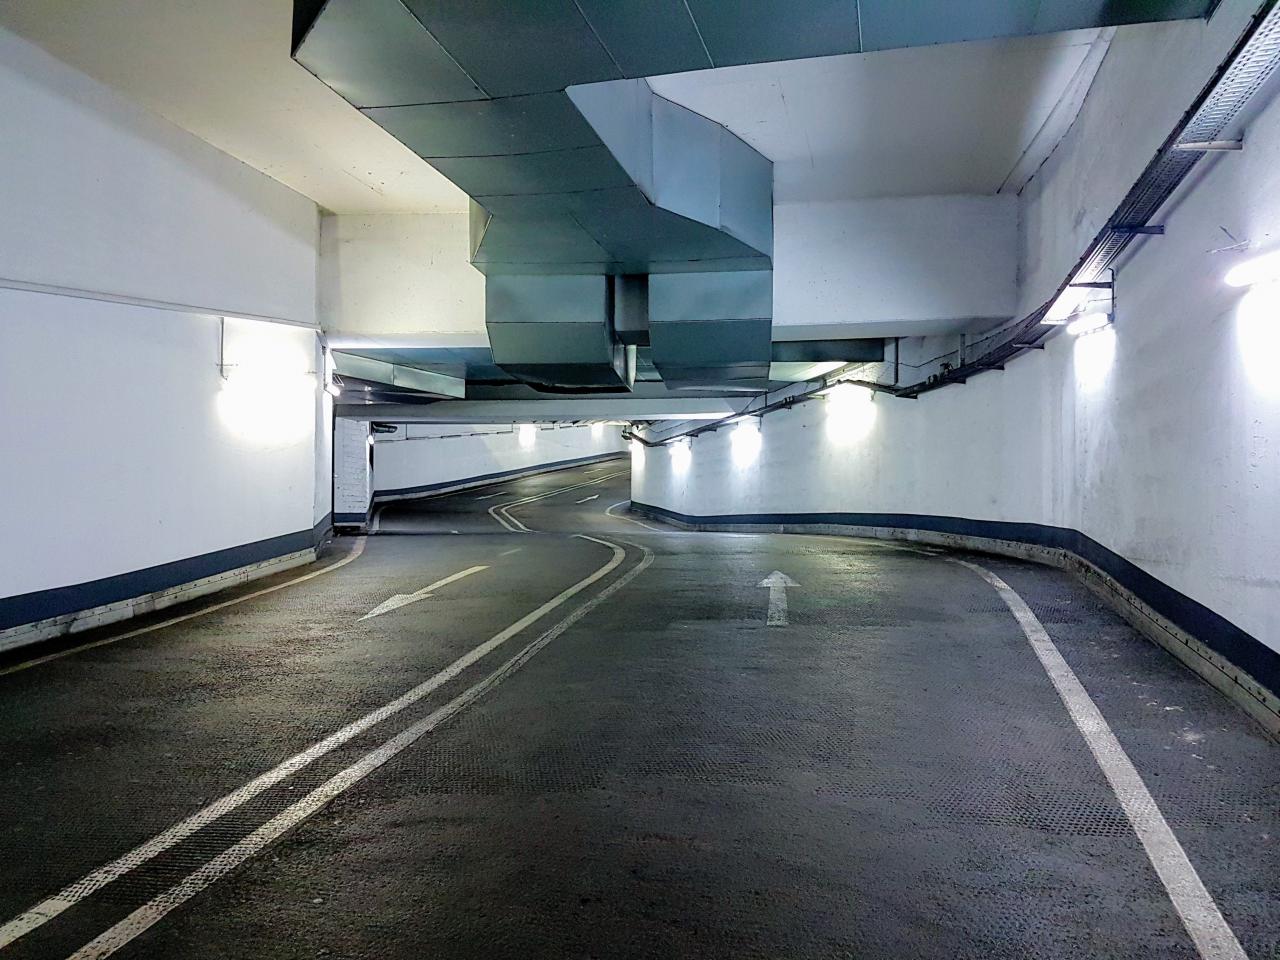 Osiedlowy Garaż Podziemny Z Zakazem Parkowania Samochodów W Lpg | 797 014 014 | Pewny Lokal